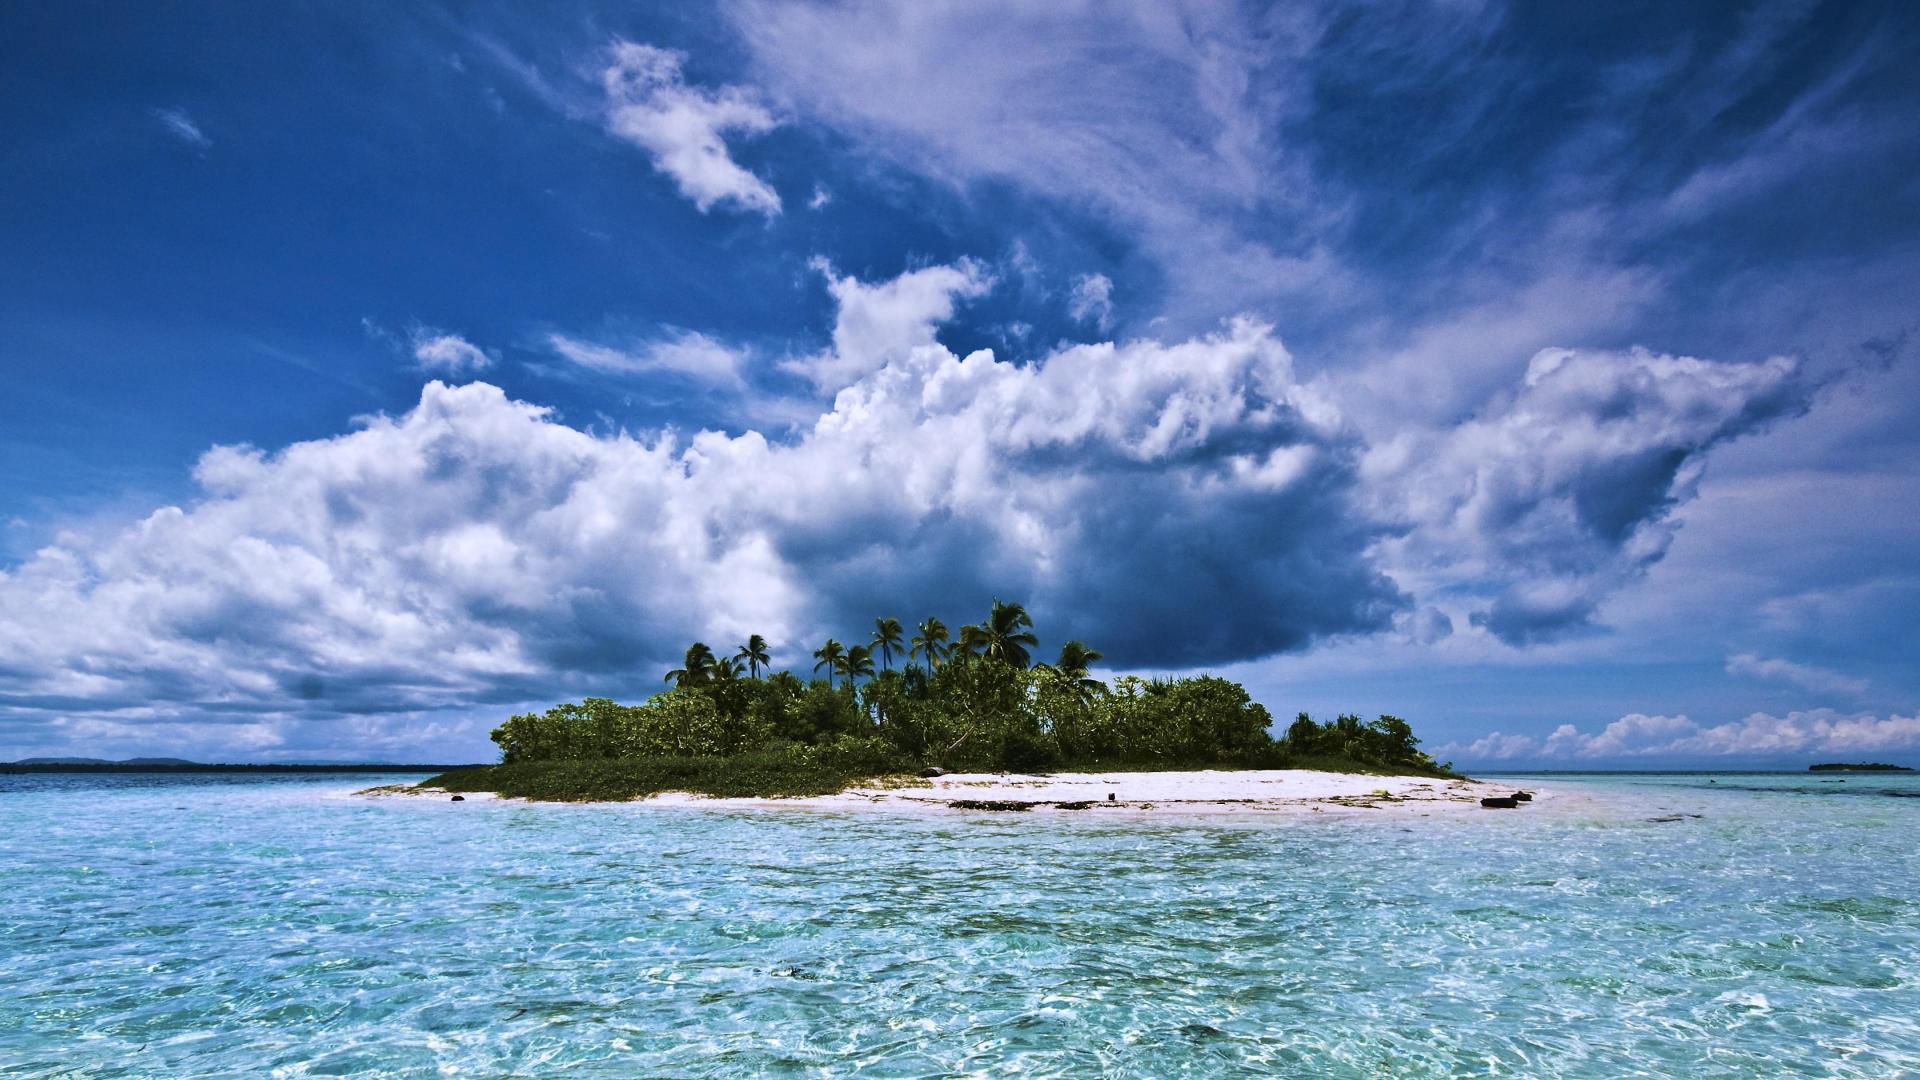 Скачать обои бесплатно Море, Облака, Пальмы, Океан, Остров, Земля/природа картинка на рабочий стол ПК